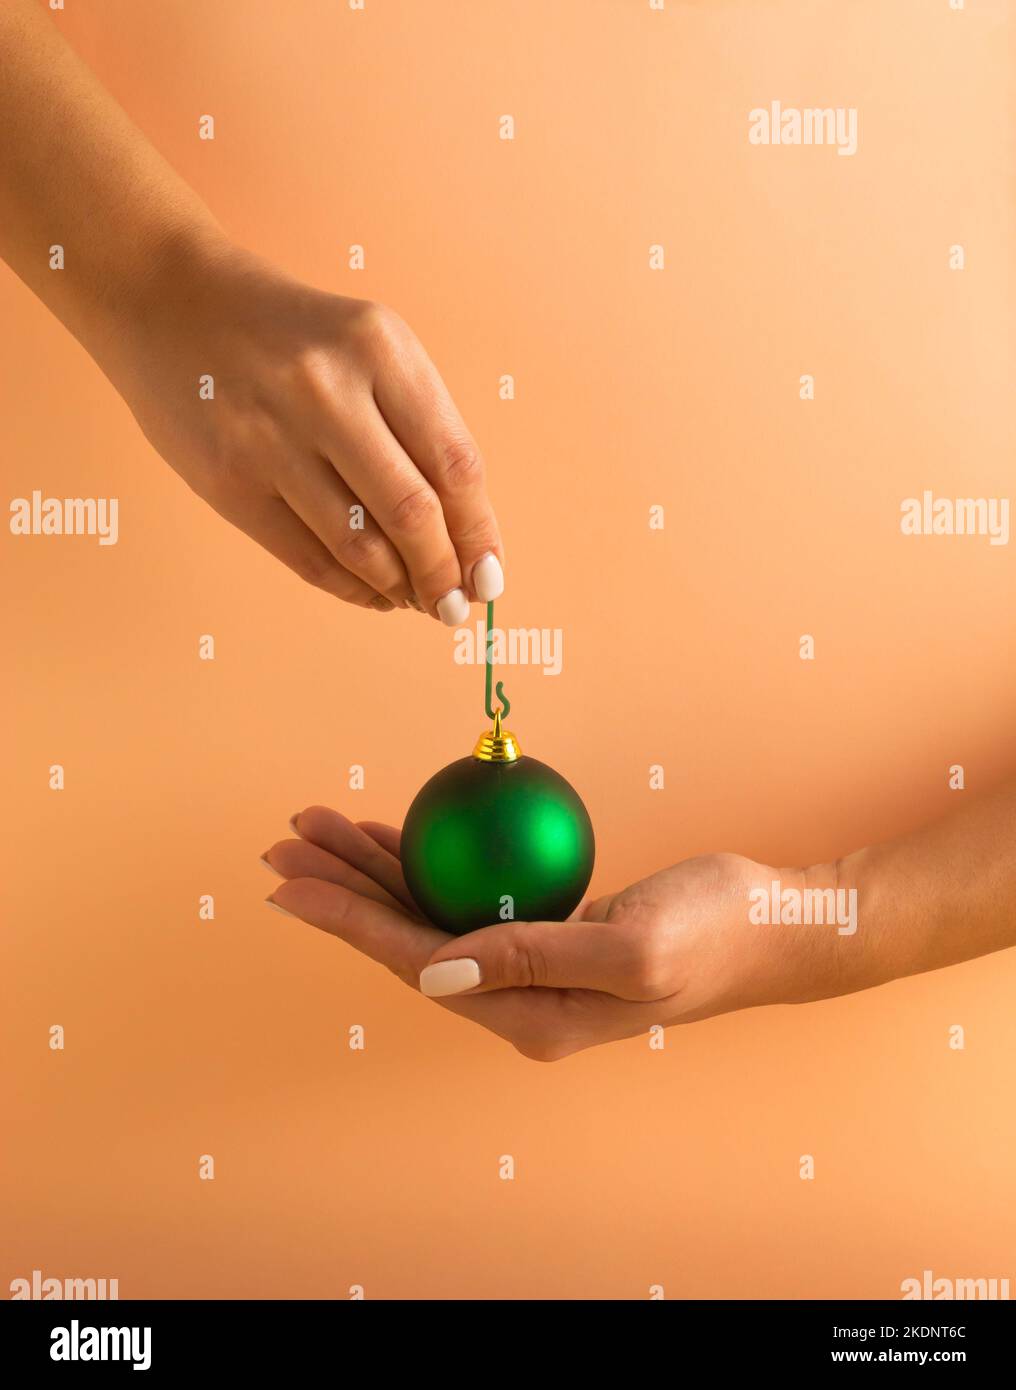 Mains de femme tenant une boule de Noël verte sur fond orange pastel. Concept de vacances minimal. Bonne Année. Banque D'Images